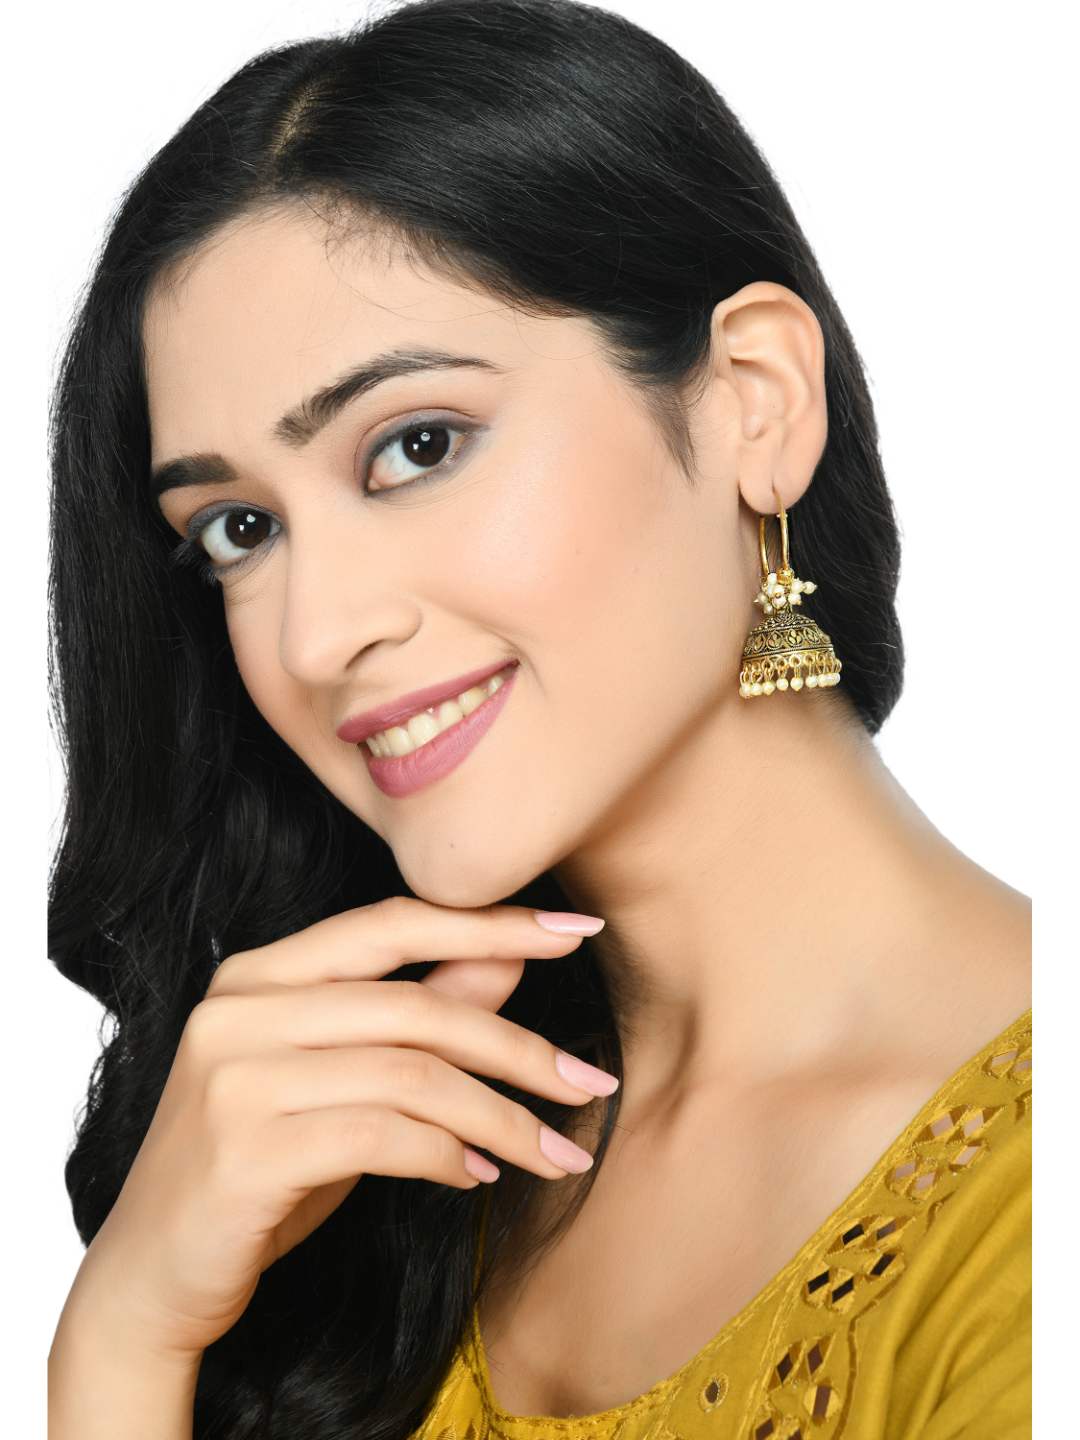 Johar Kamal Latest Design Golden color Jhumka Earrings Jker_052